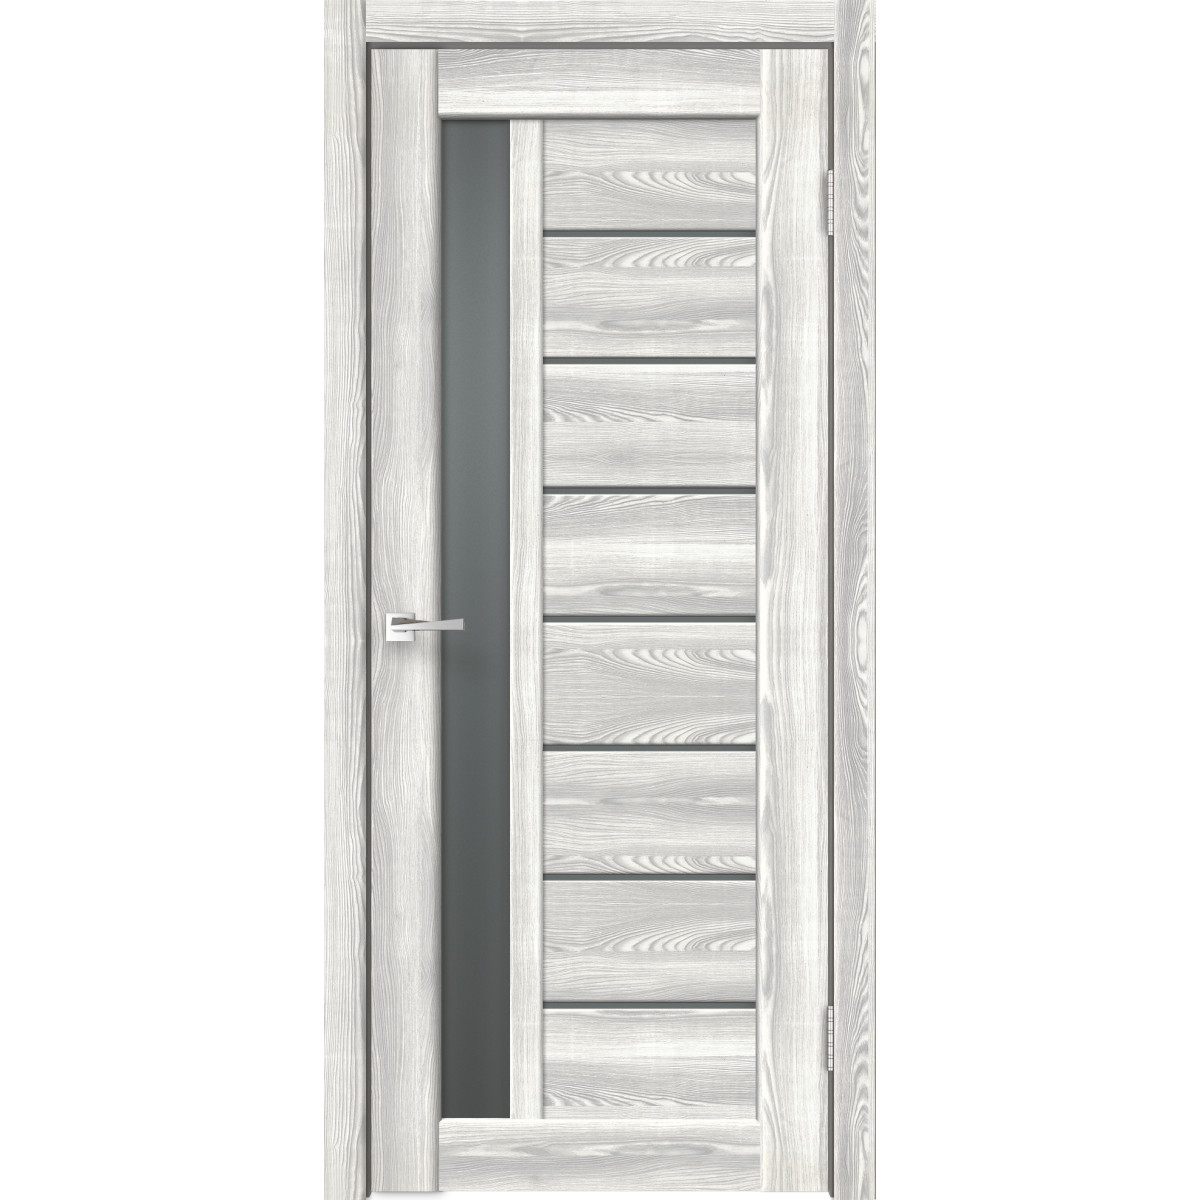 Дверь межкомнатная остеклённая Сиэтл 8 60х200 см с фурнитурой, ПВХ, цвет светлый клён